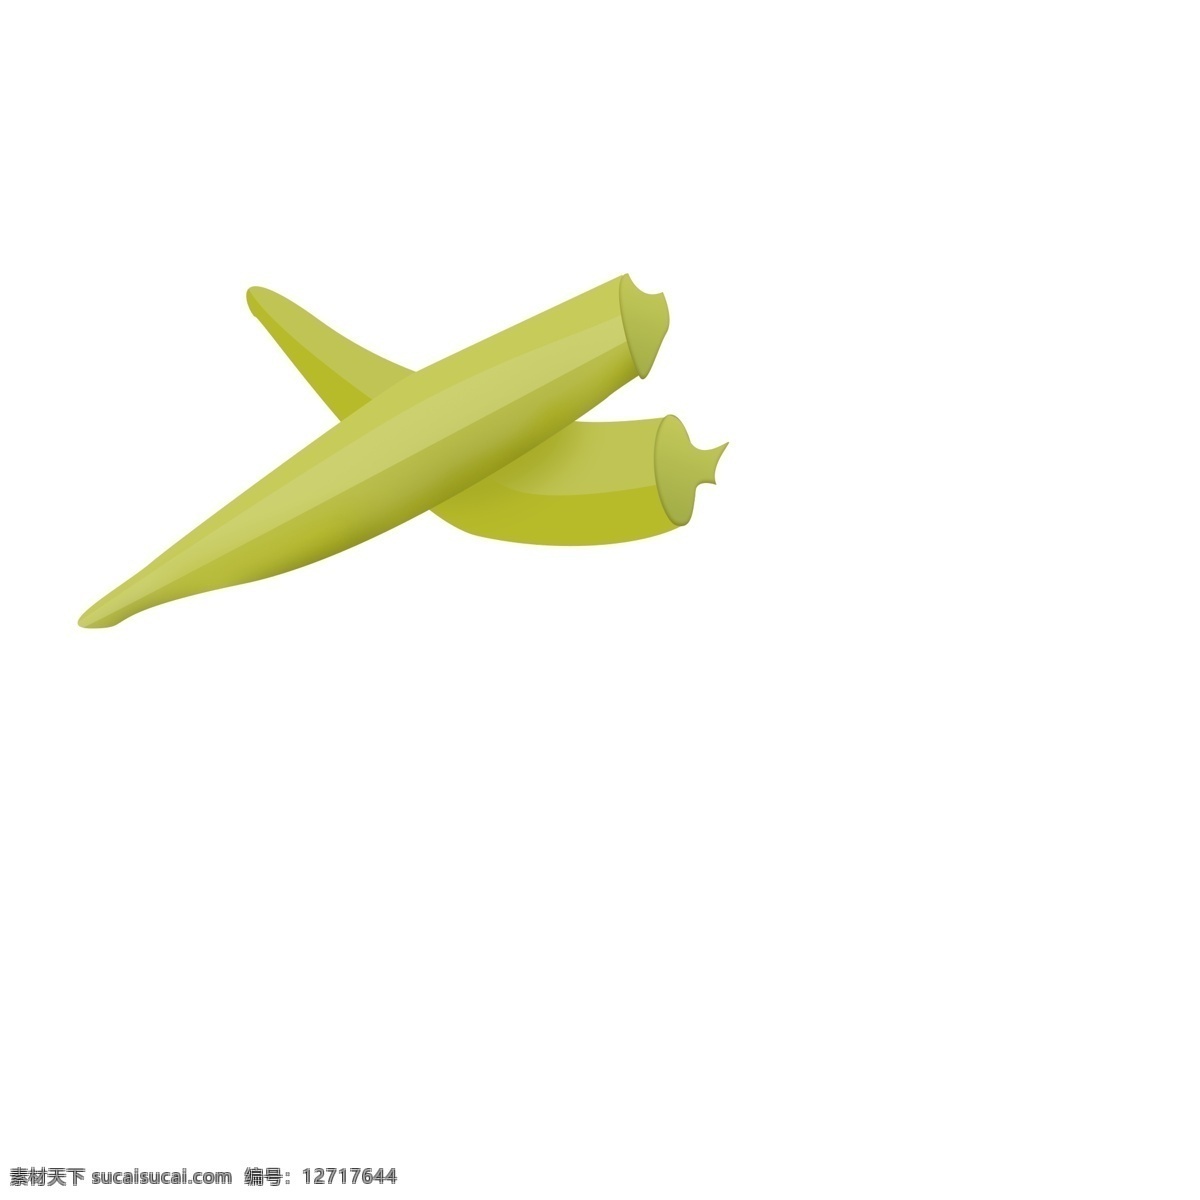 手绘 秋 葵 食 材 插画 商用 两颗 蔬菜 美味 食材 食物